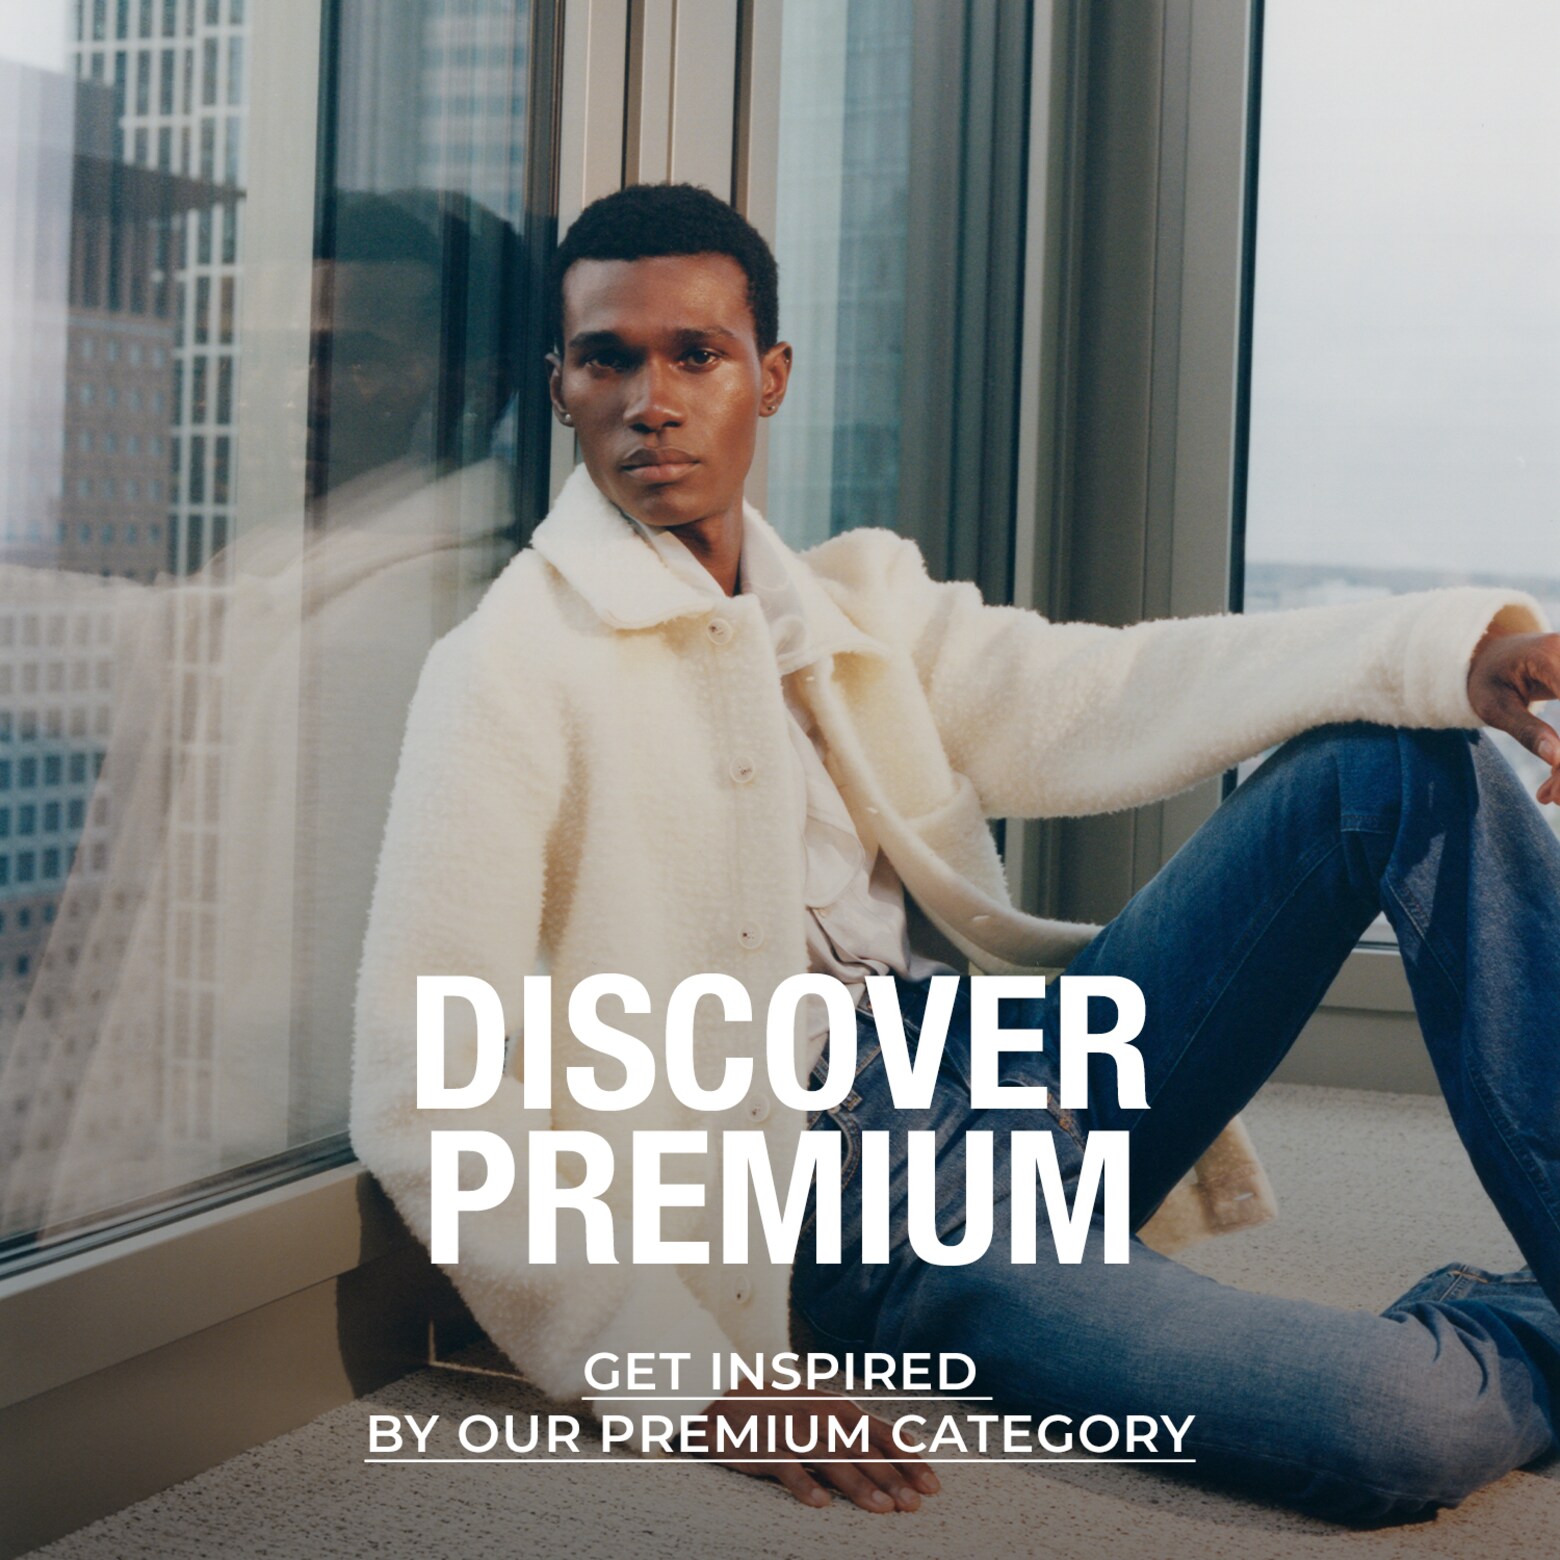 Lase end inspireerida meie premium-toodetel Premium-valikud